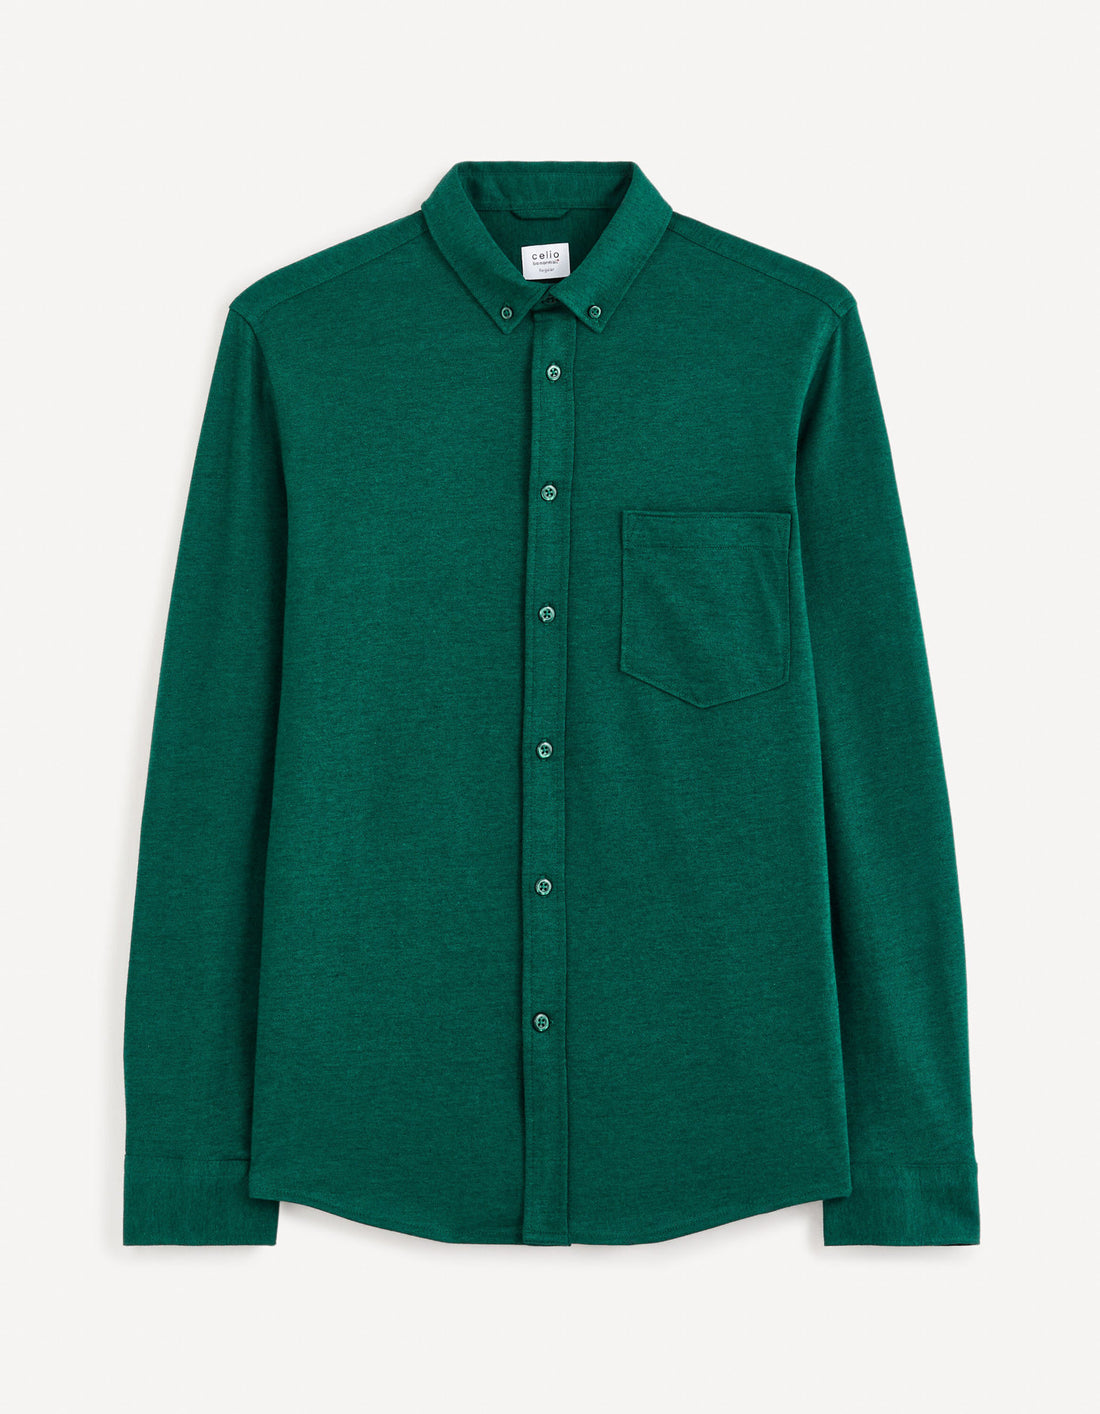 Regular 100% Cotton Pique Knit Shirt - Green_BAPIK_DARK GREEN_01